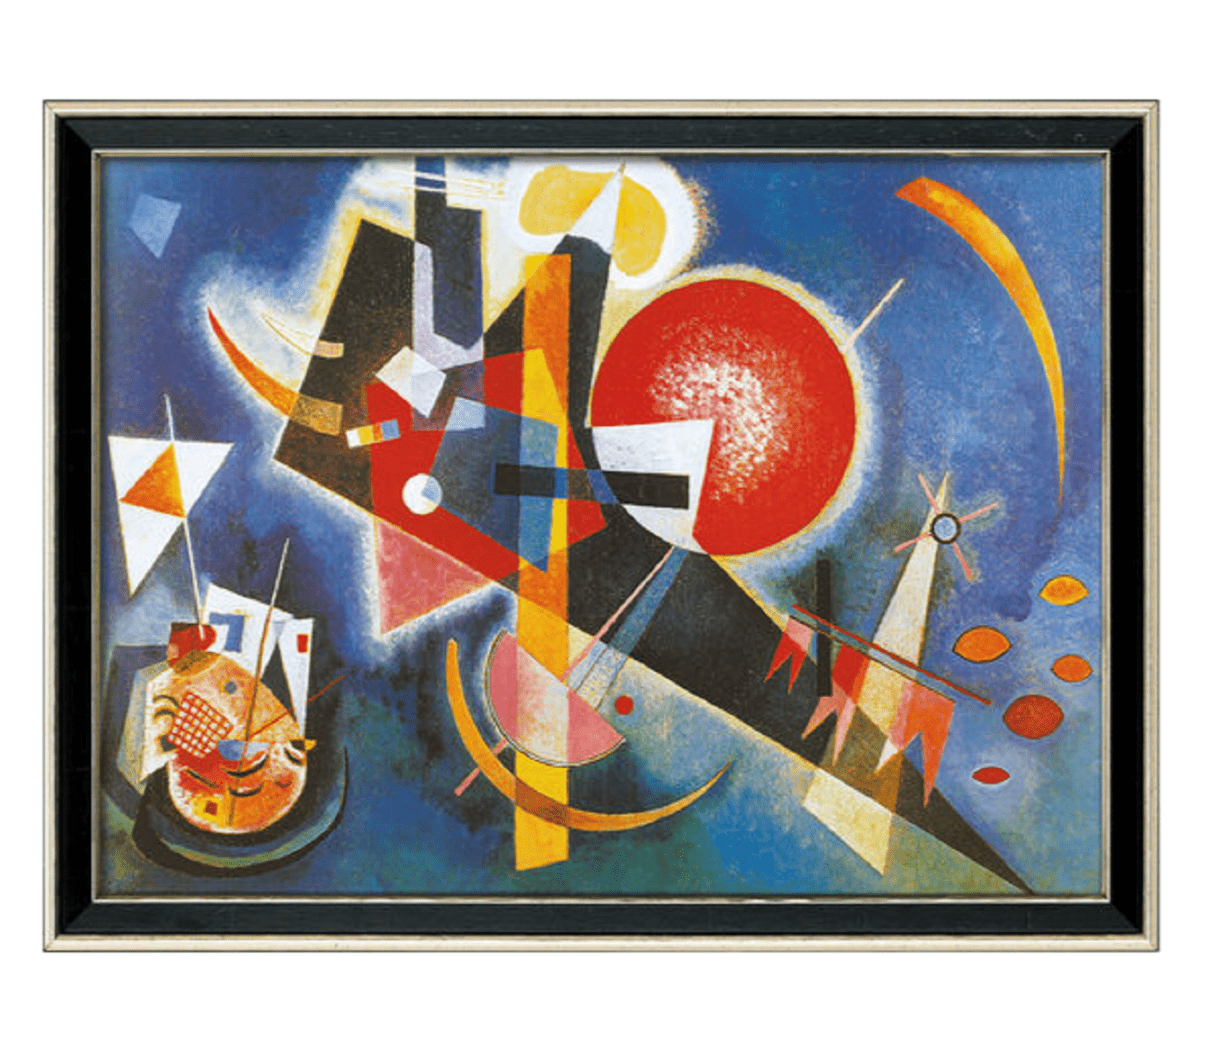 Abstraktes Gemälde "Im Blau" (1925) von Wassily Kandinsky, limitierte Giclée-Reproduktion auf Leinwand